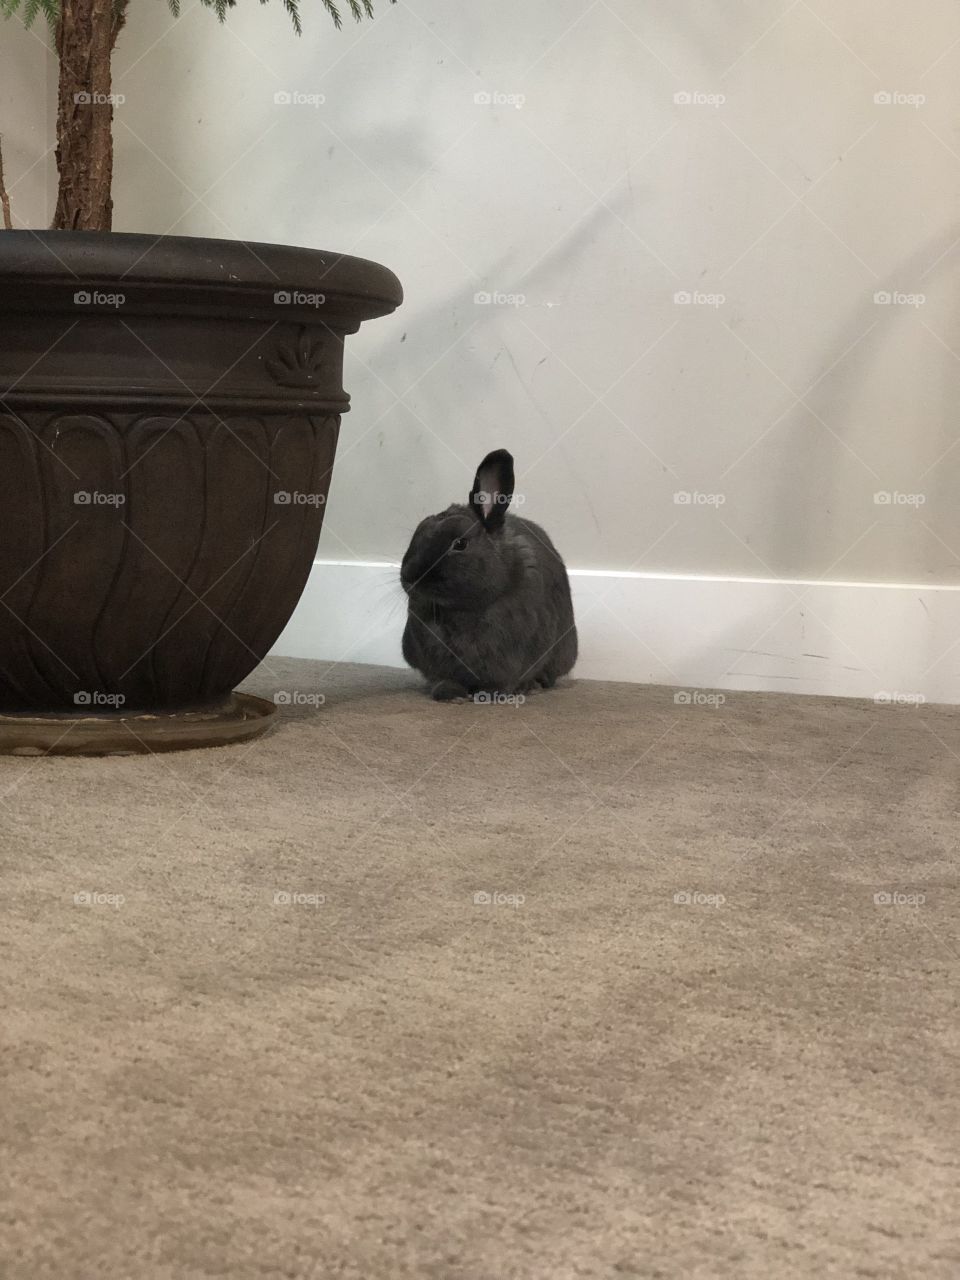 Ollie the bunny